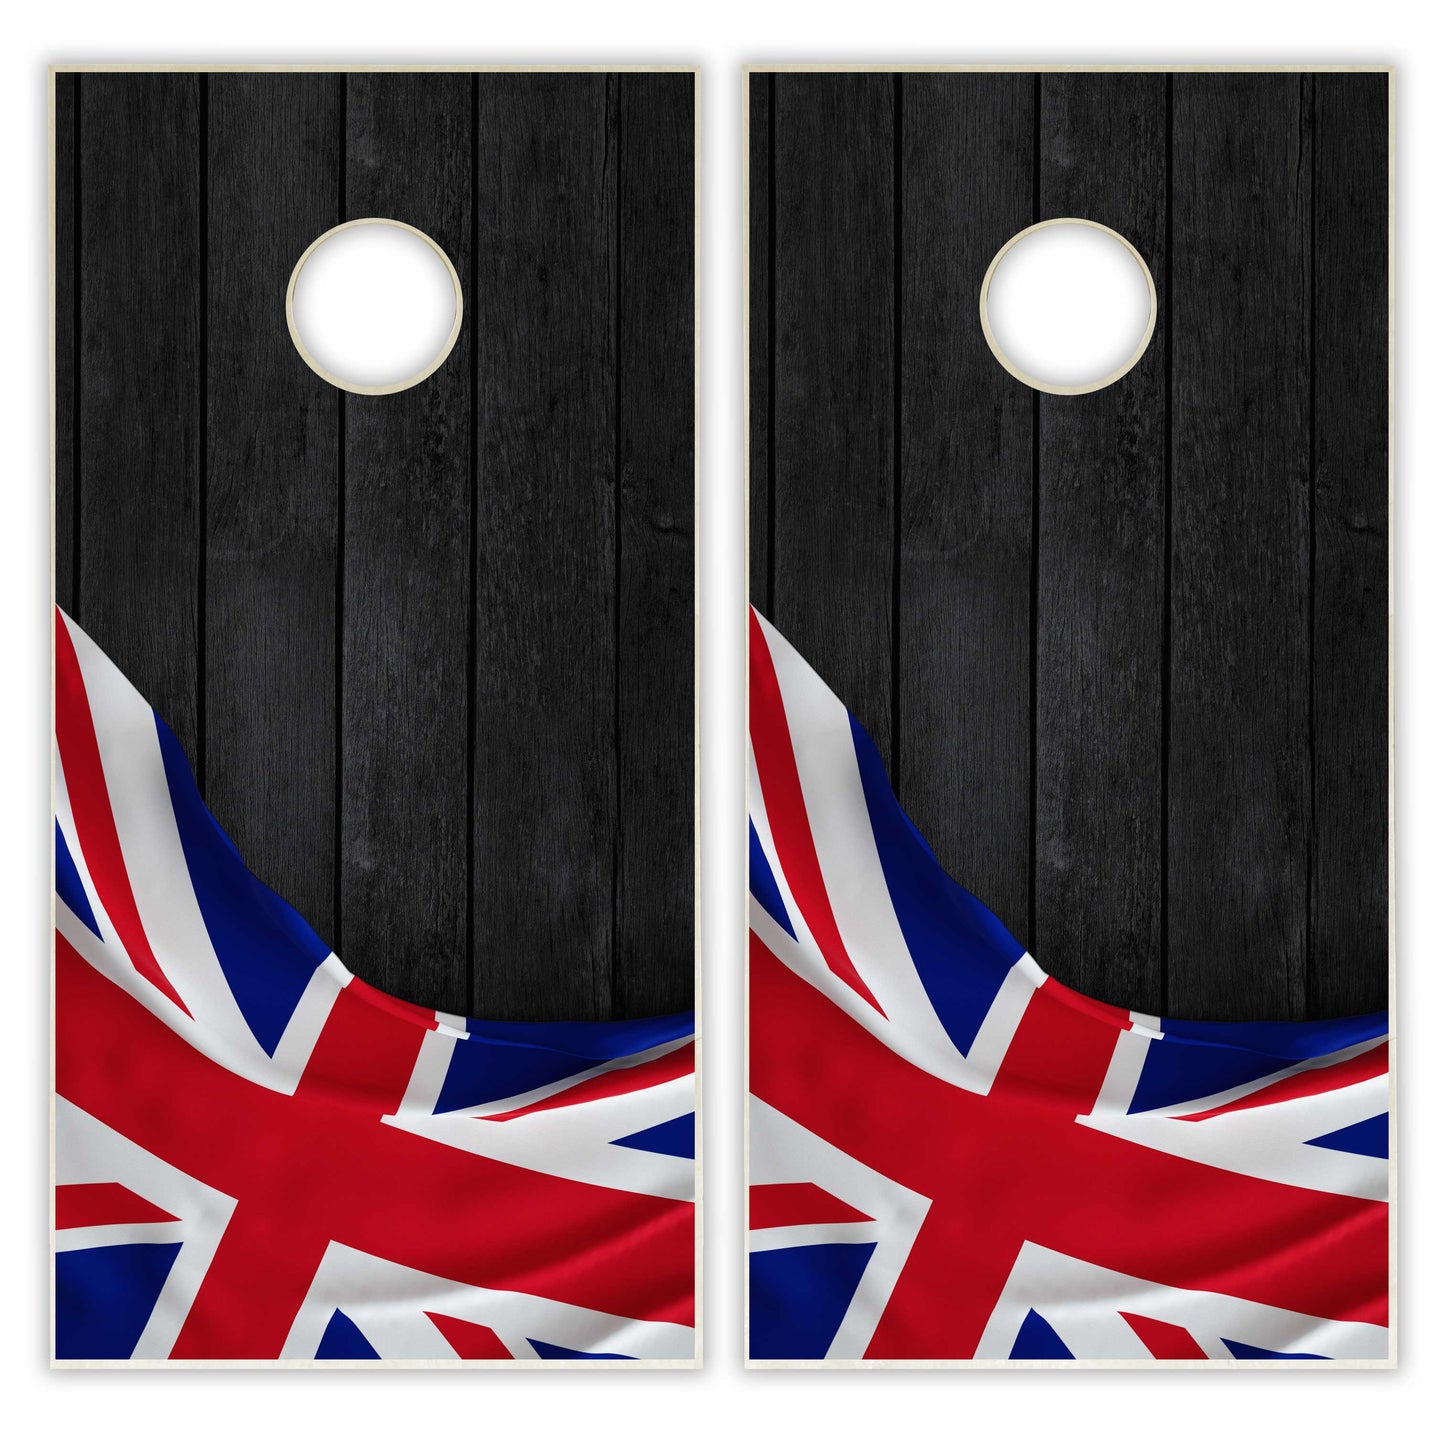 United Kingdom Flag Cornhole Set - Black Wood